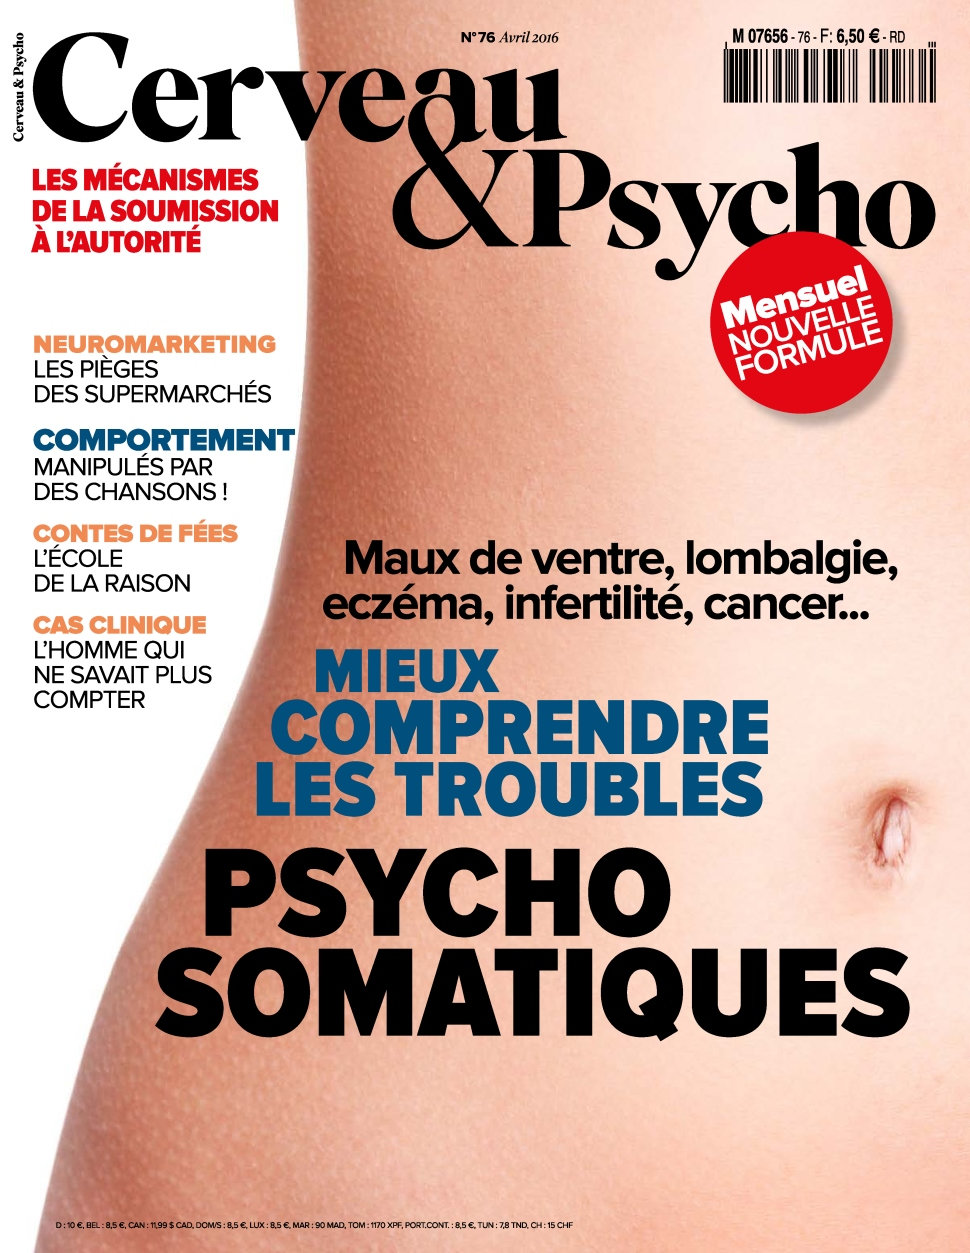 Cerveau & Psycho N°76 - Avril 2016